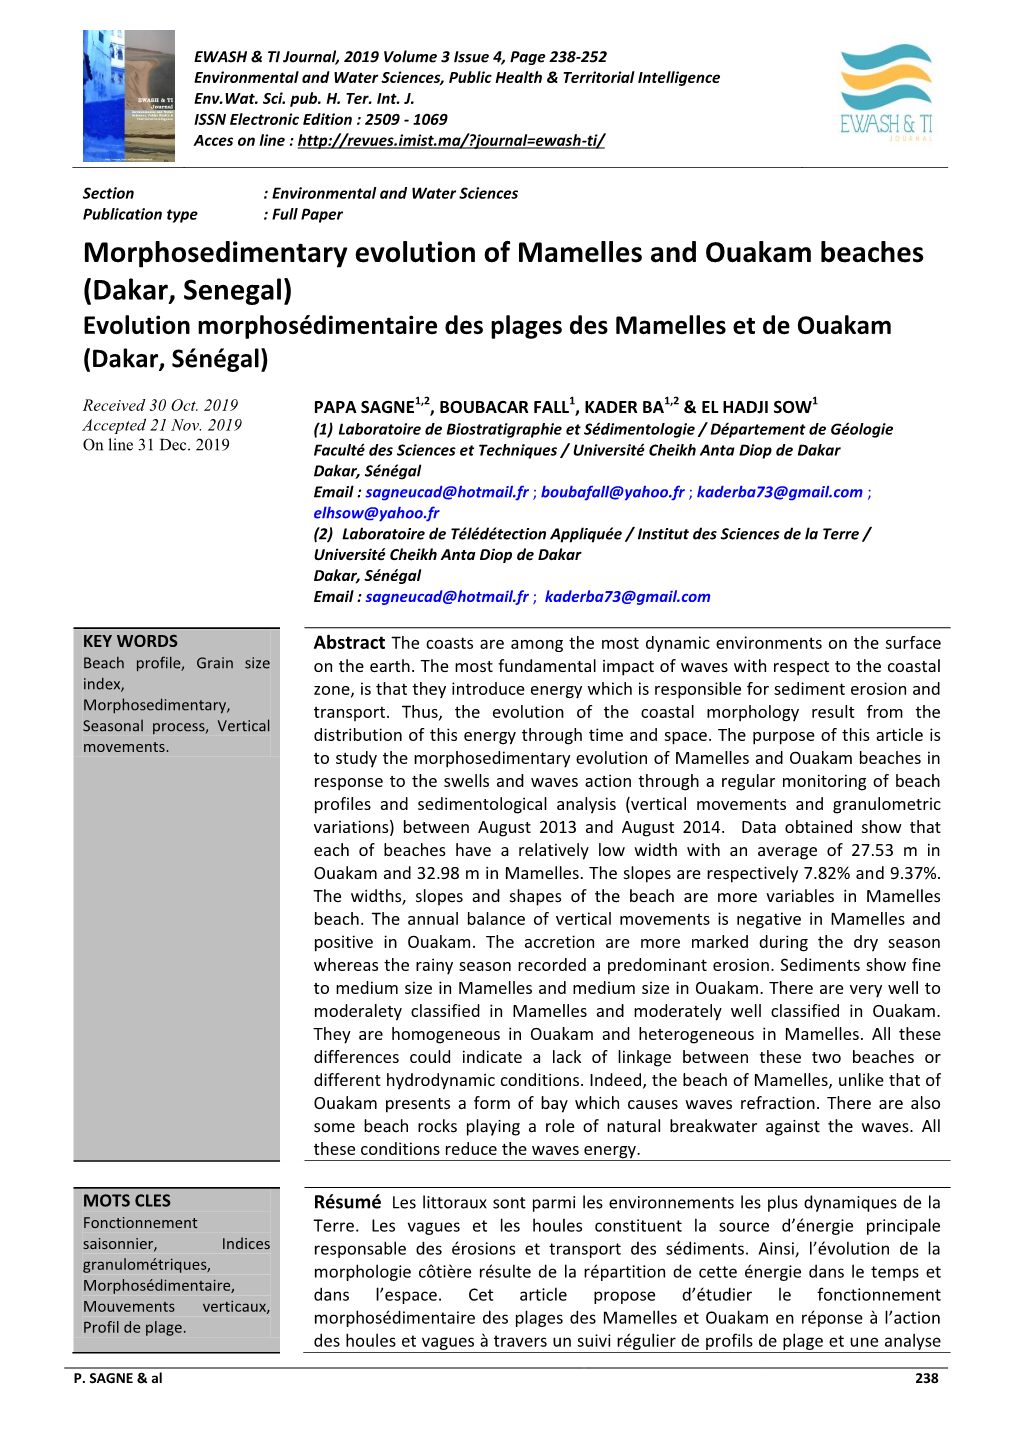 Morphosedimentary Evolution of Mamelles and Ouakam Beaches (Dakar, Senegal) Evolution Morphosédimentaire Des Plages Des Mamelles Et De Ouakam (Dakar, Sénégal)